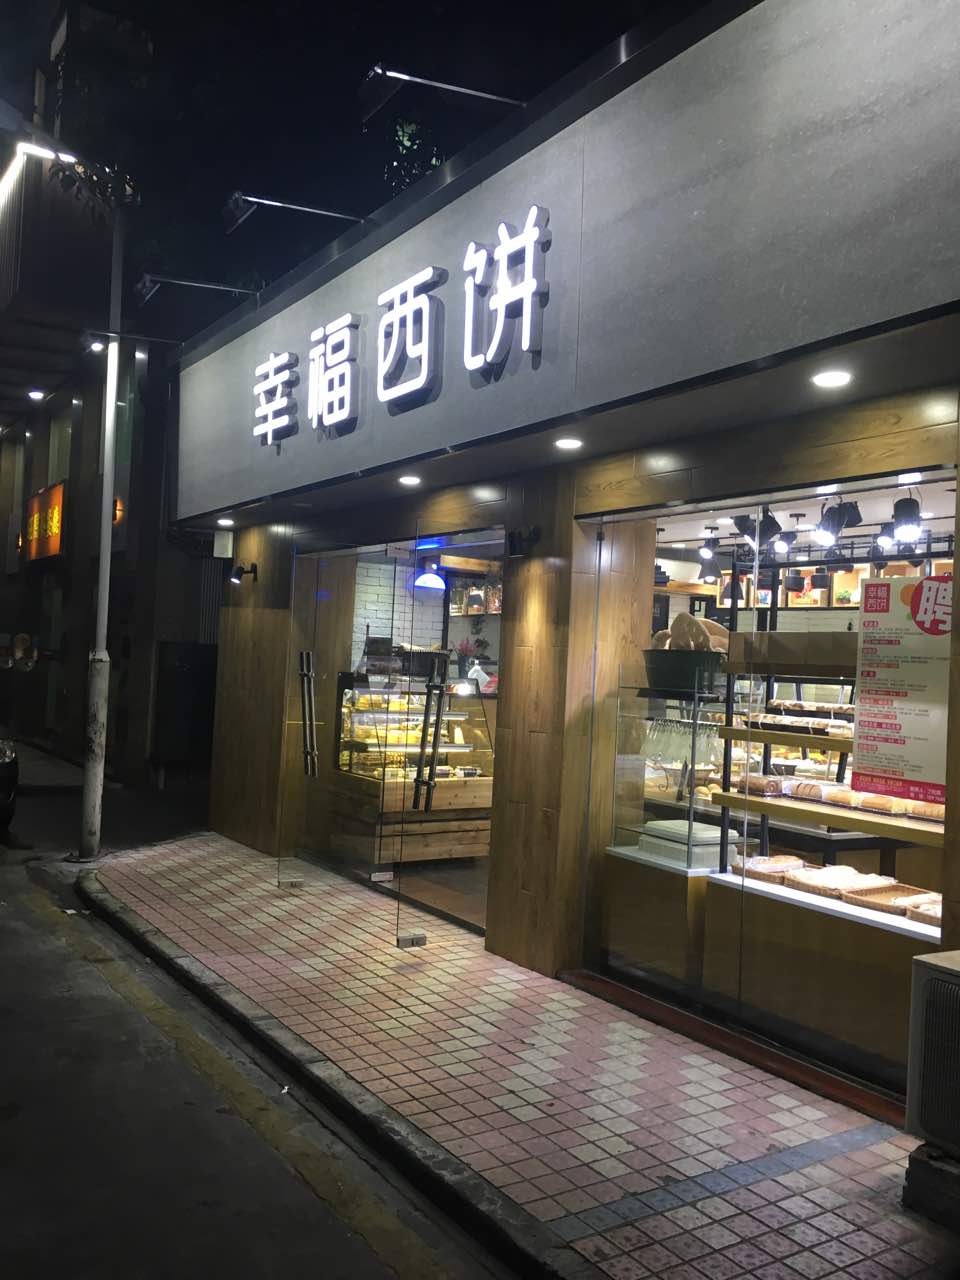 2021幸福西饼面包茶饮(田面店)美食餐厅,这家店的面包挺好吃的,特别